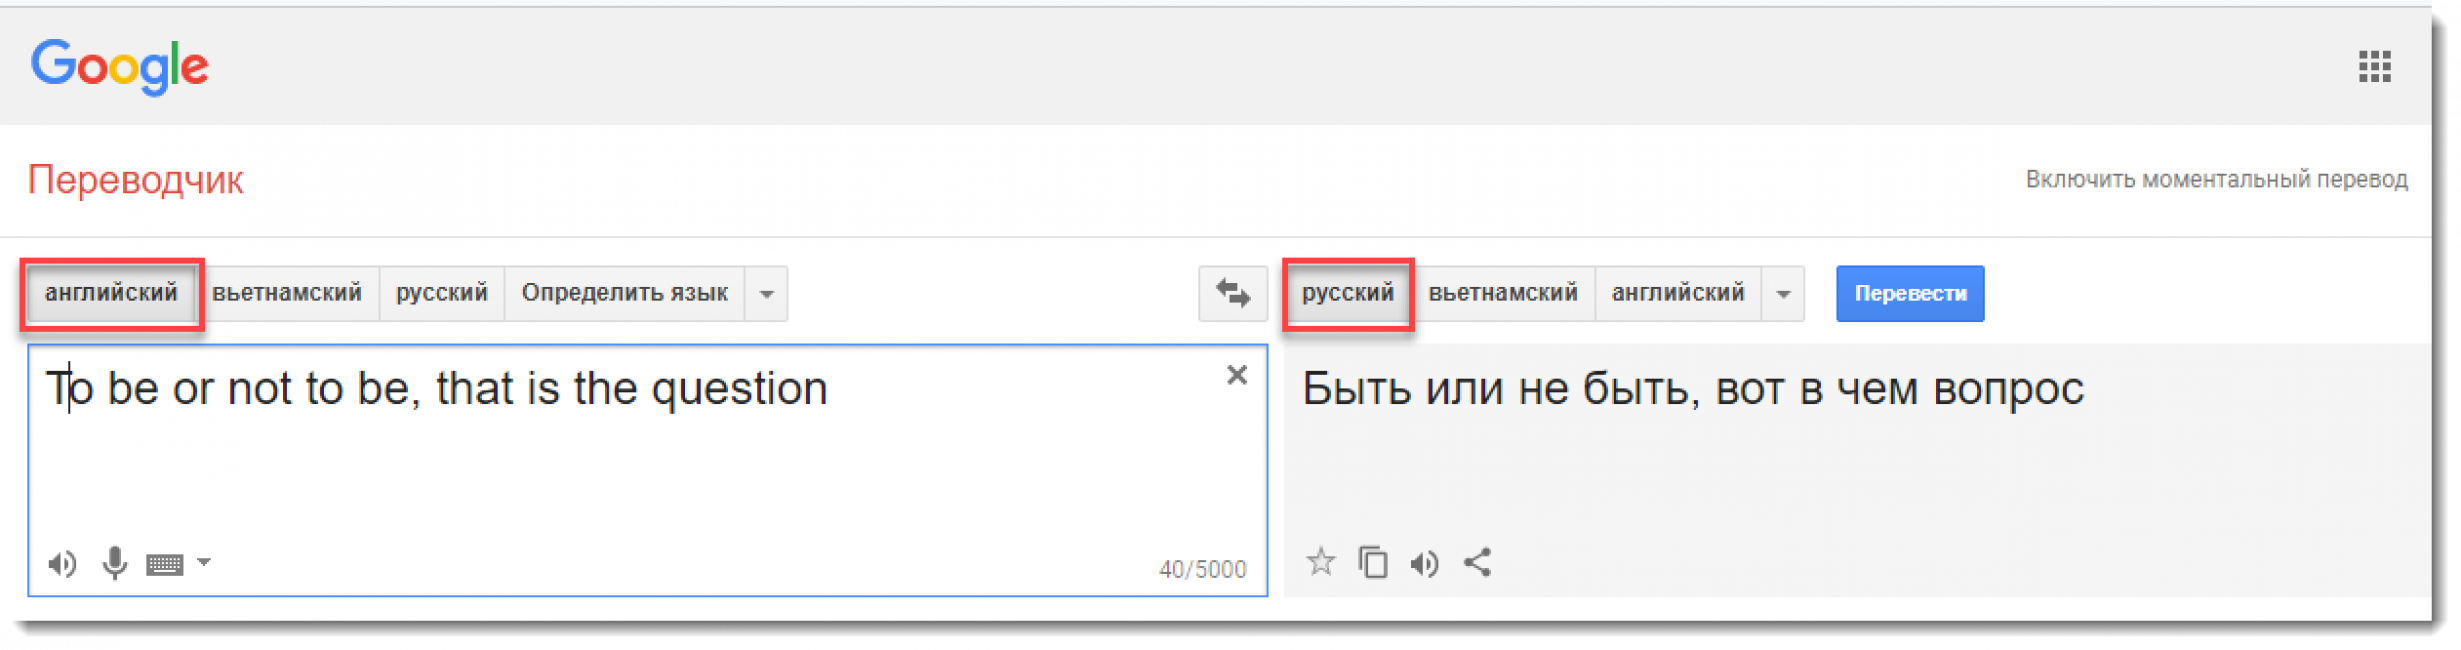 Як скласти слово з англійських букв і перевести його на російську?